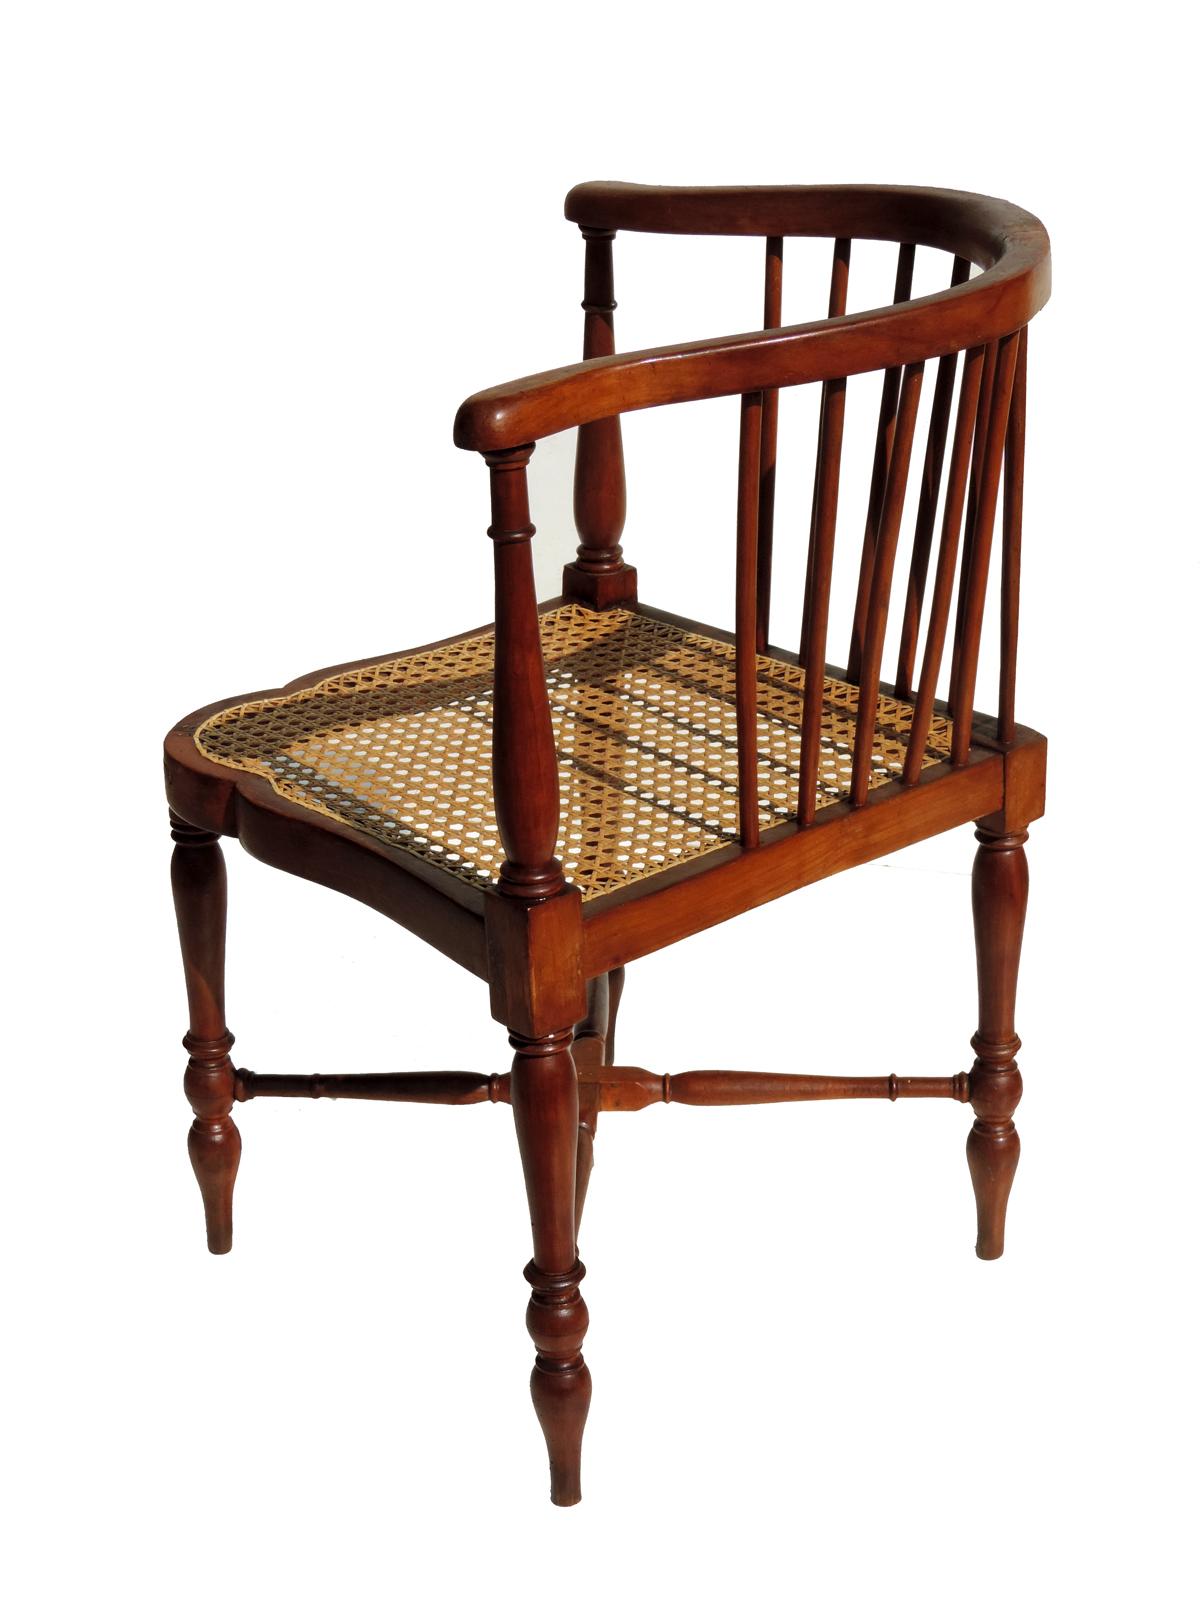 Straw Adolf Loos F.O. Schmidt 1898-1900 Jugendstil Corner Chair For Sale